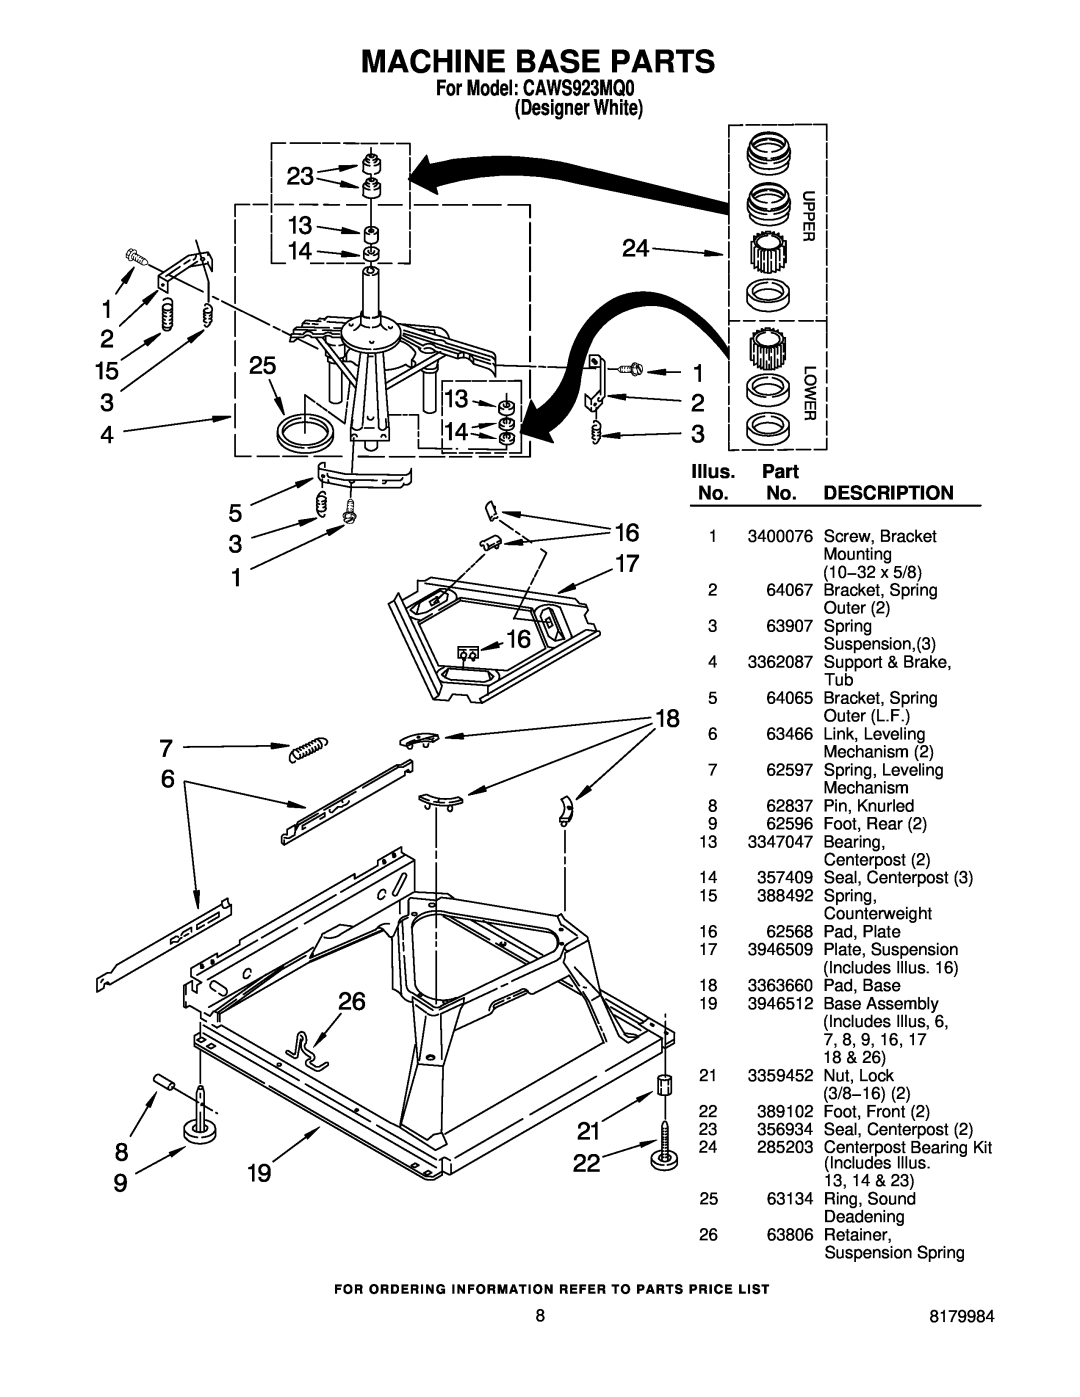 Crosley manual Machine Base Parts, For Model CAWS923MQ0 Designer White, Illus, Description 